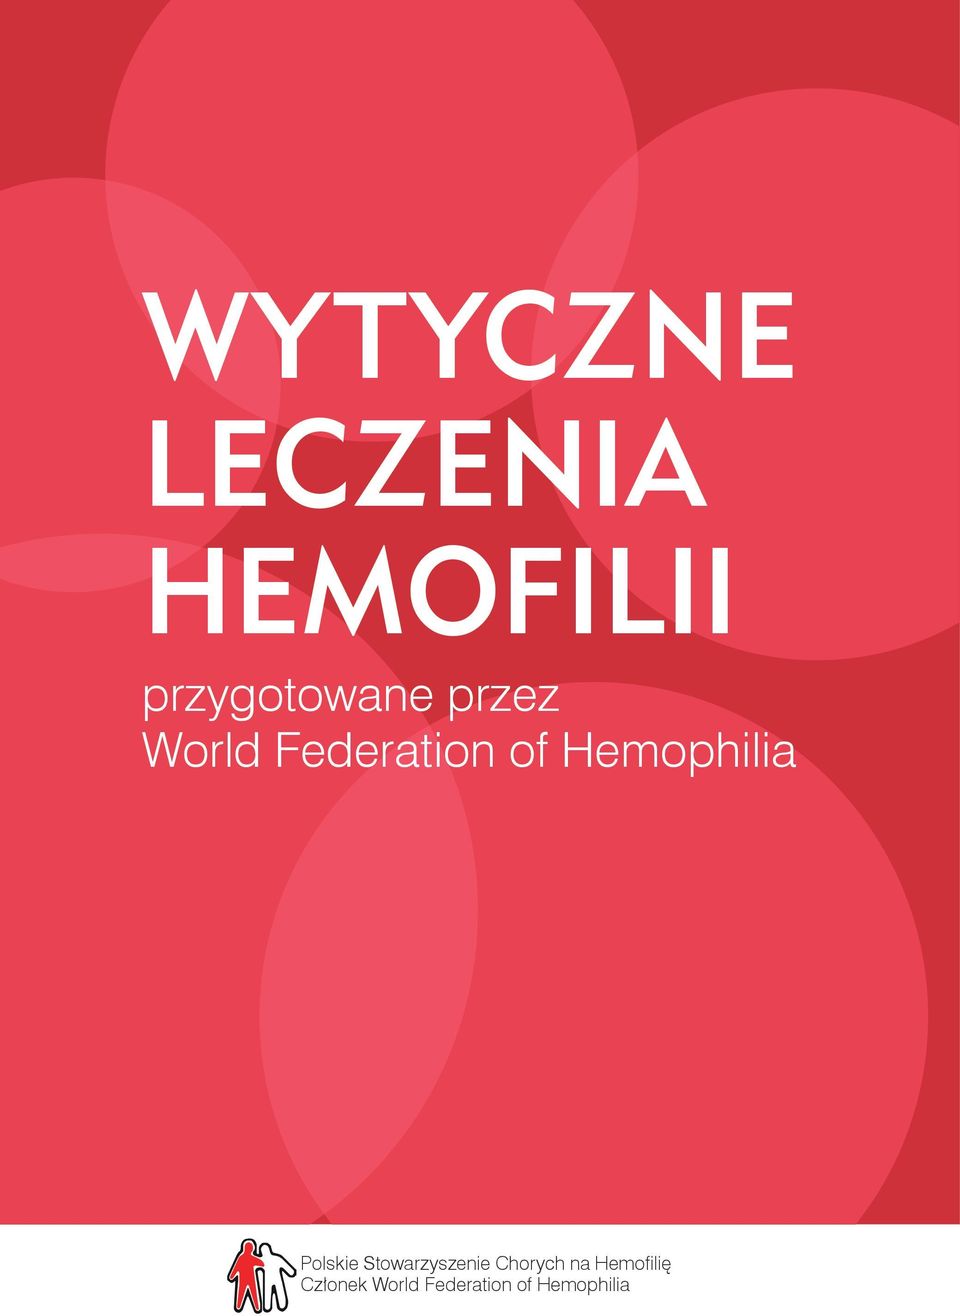 Hemophilia Polskie Stowarzyszenie